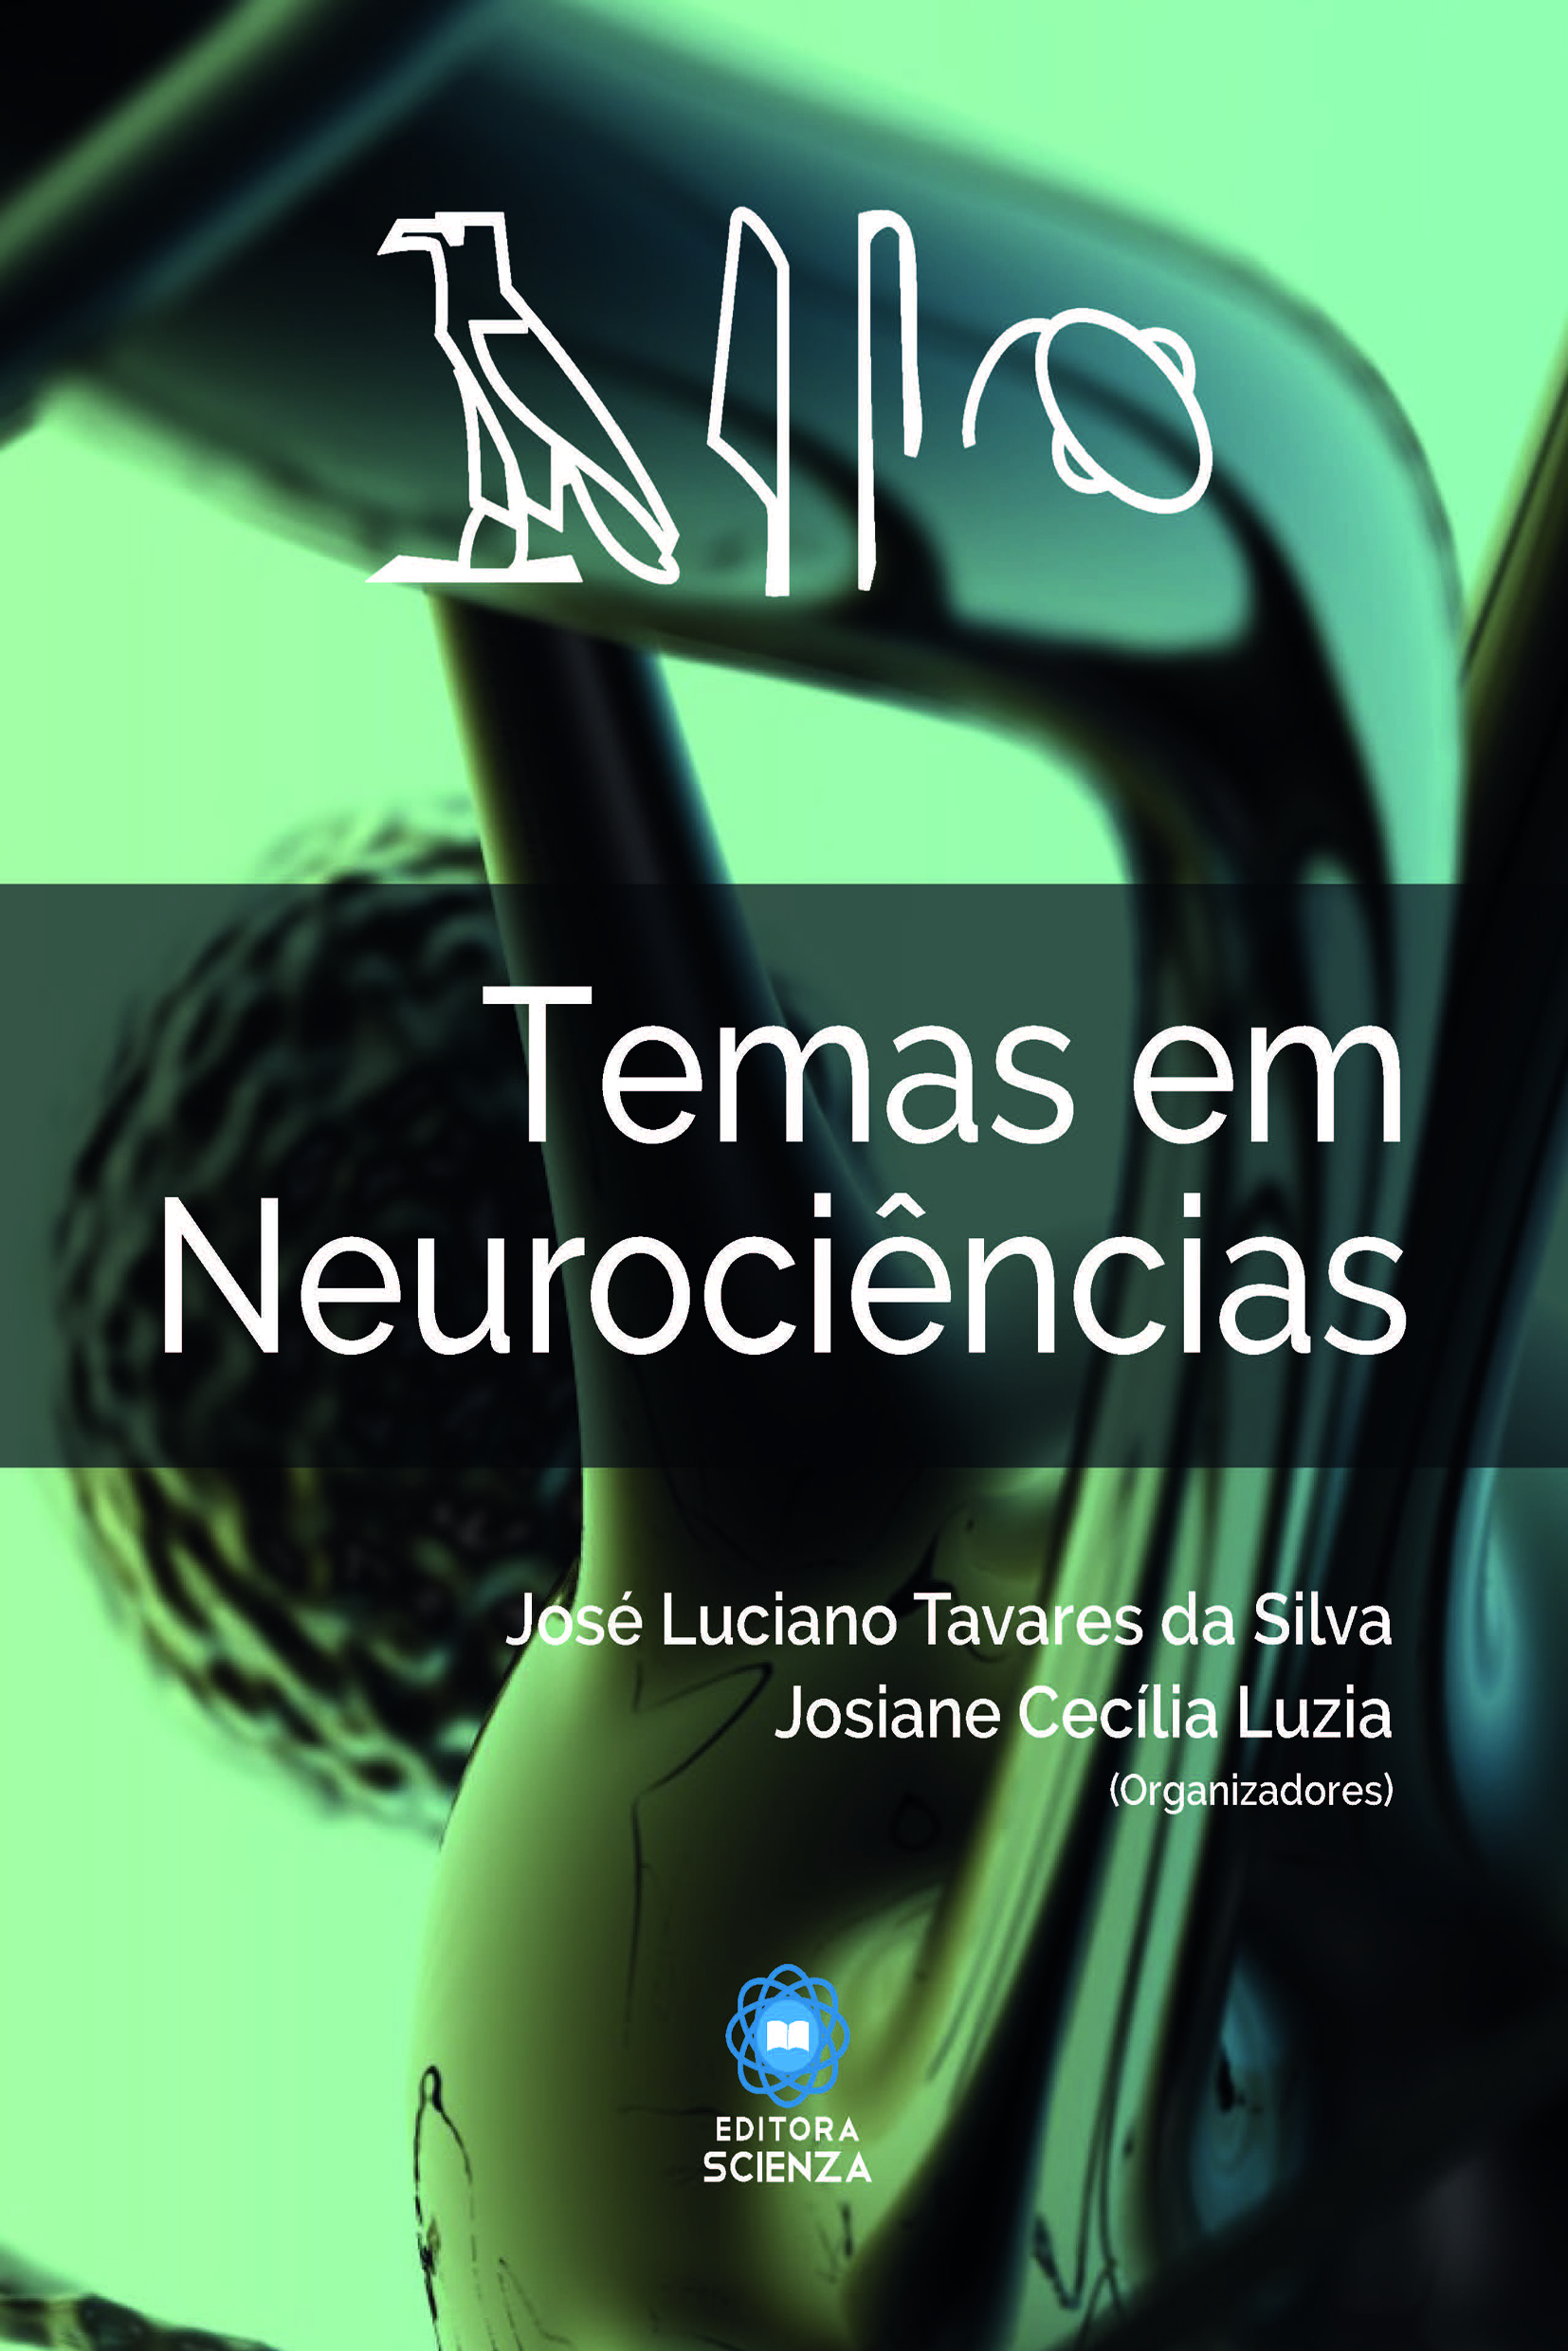 Temas em Neurociencias